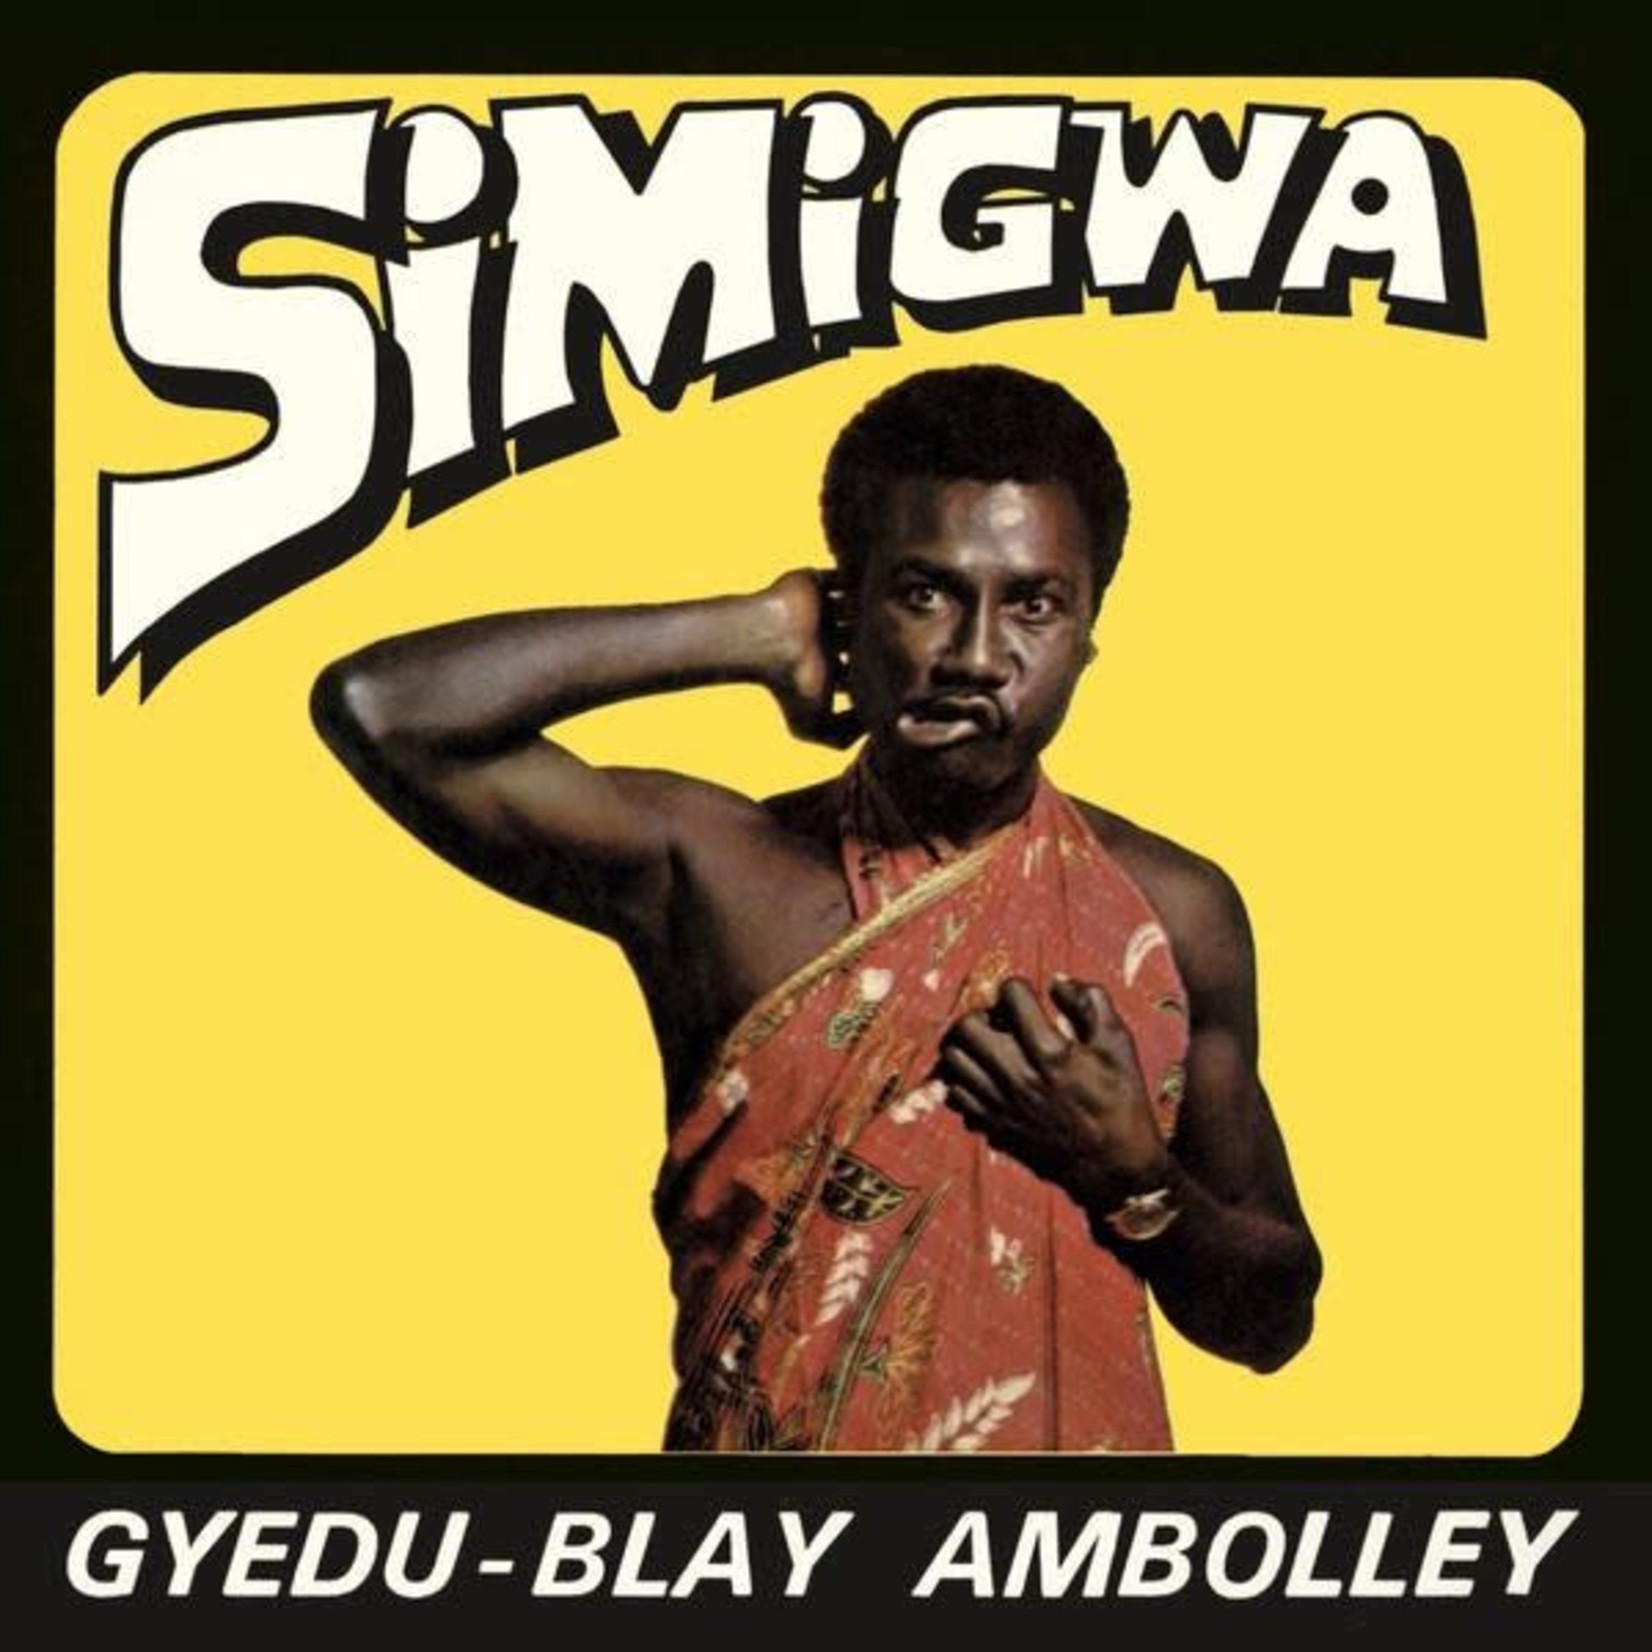 [New] Gyedu-Blay Ambolley - Simigwa